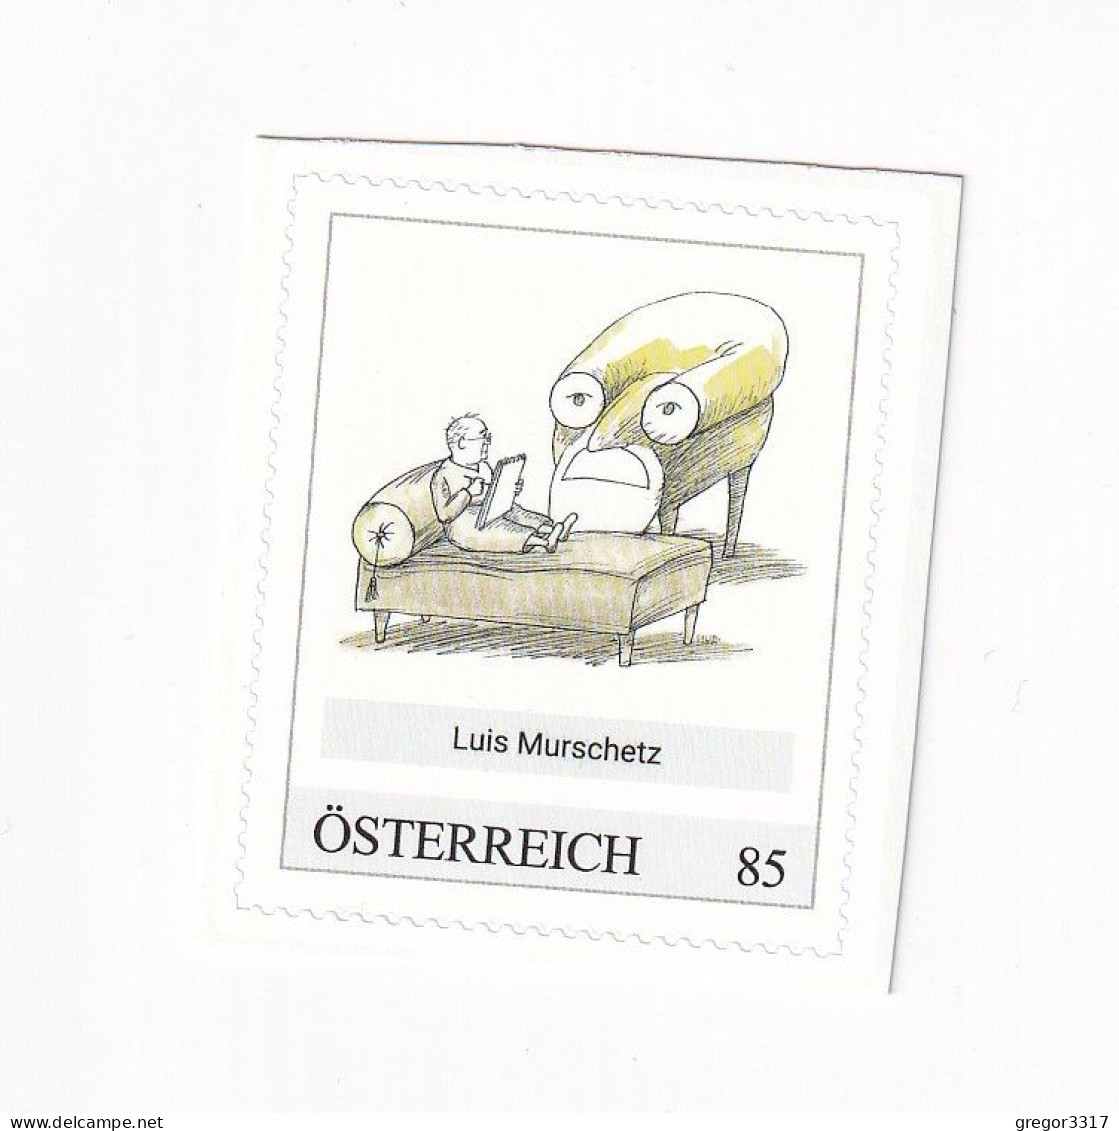 ÖSTERREICH - KARIKATURMUSEUM KREMS - LUIS MURSCHETZ  - Personalisierte Briefmarke ** Postfrisch Selbstklebemarke - Personalisierte Briefmarken